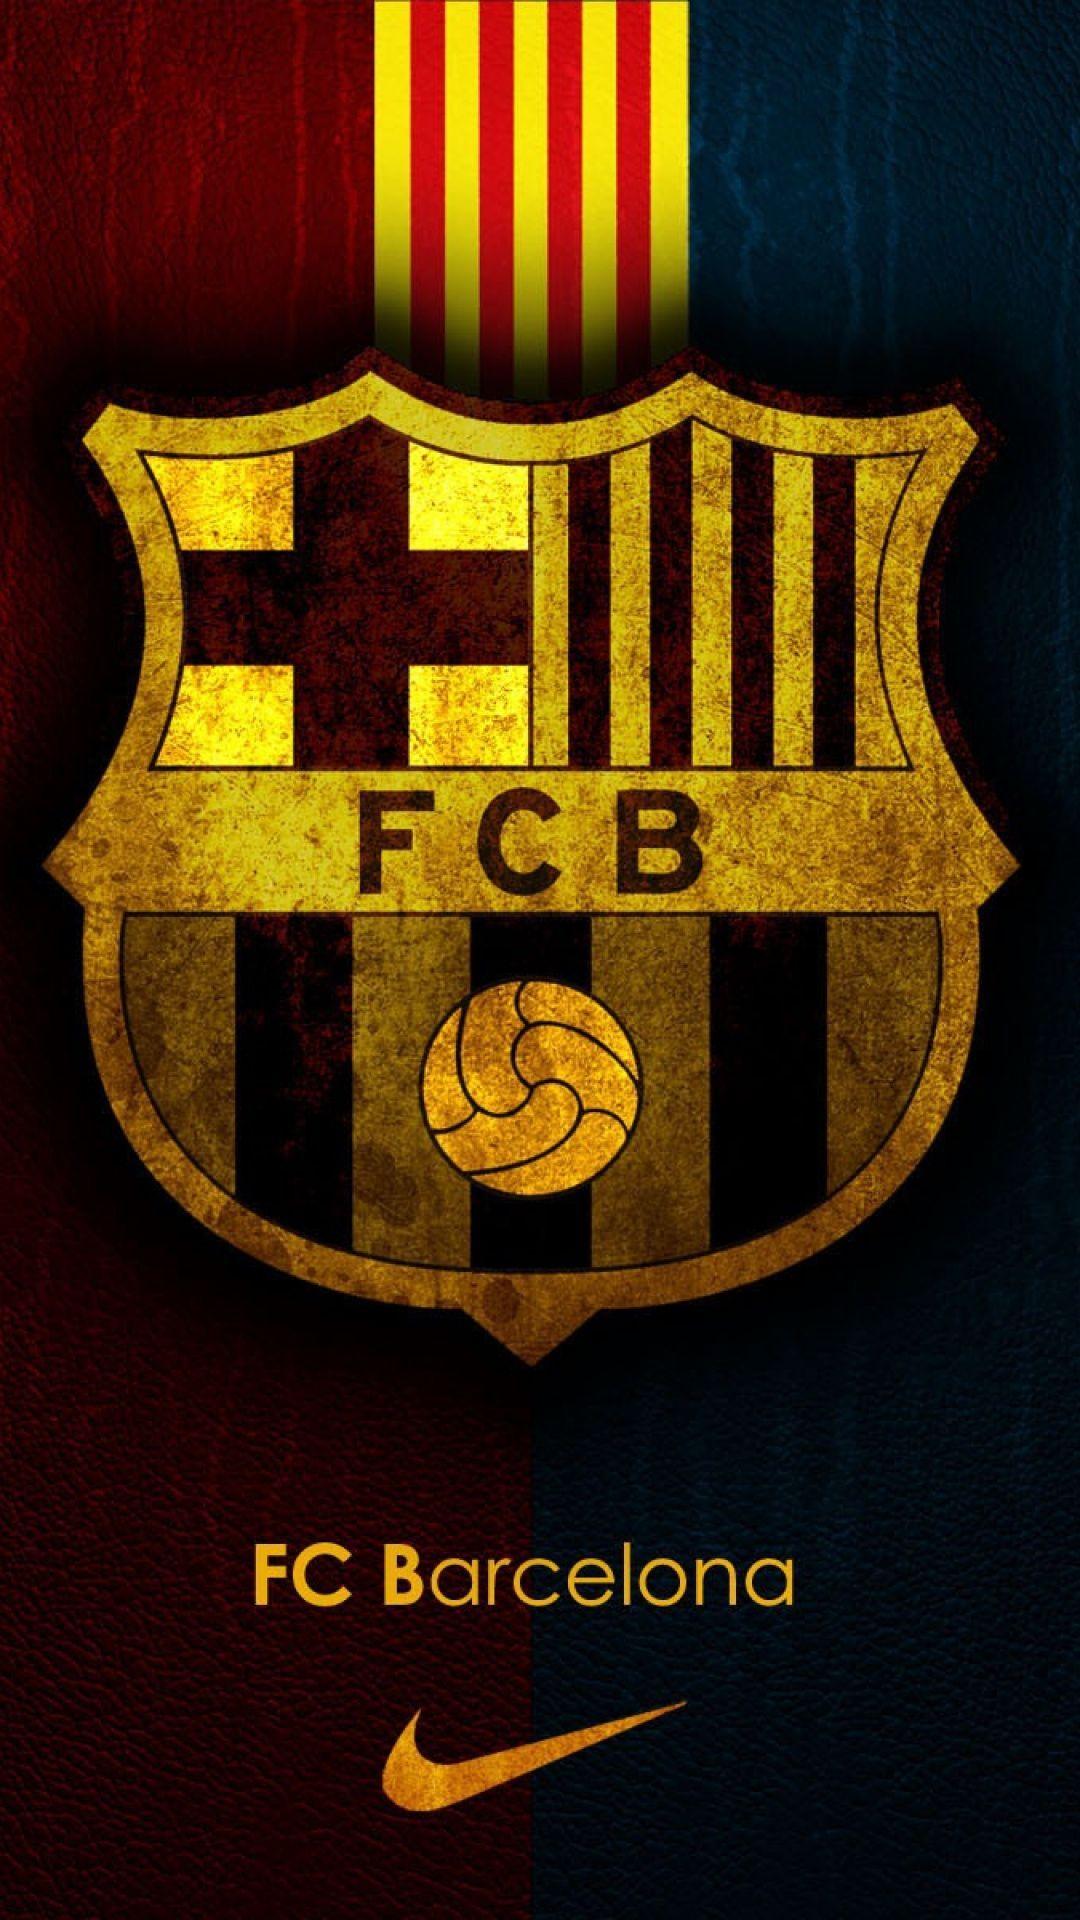 Barcilona Logo - FC Barcelona Team Logo. Deportes. FC Barcelona, Barcelona football